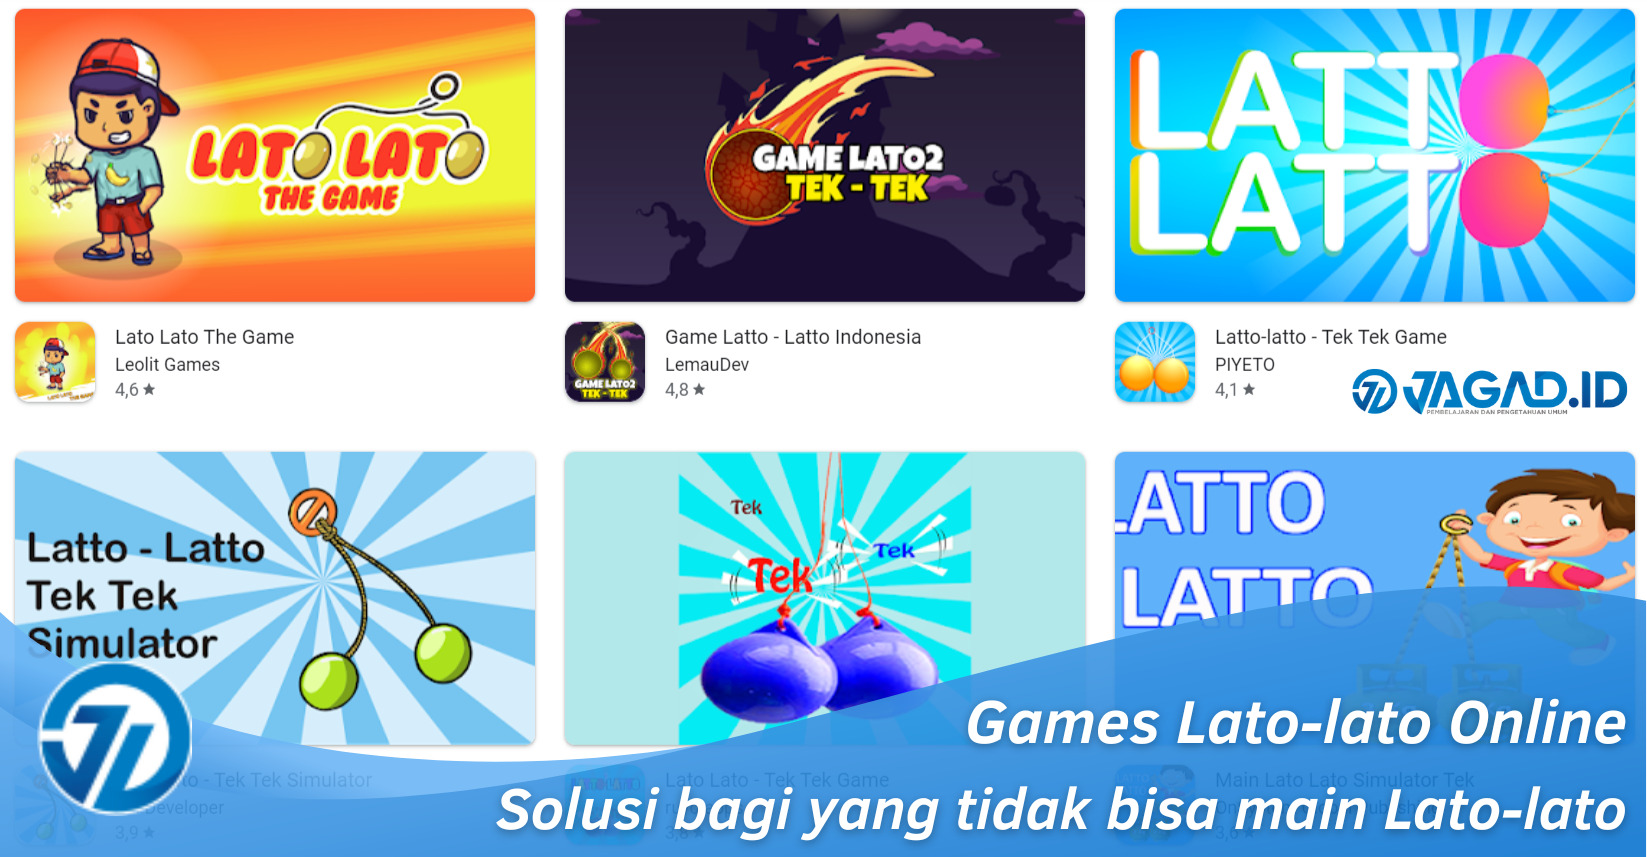 Games Lato-lato Online